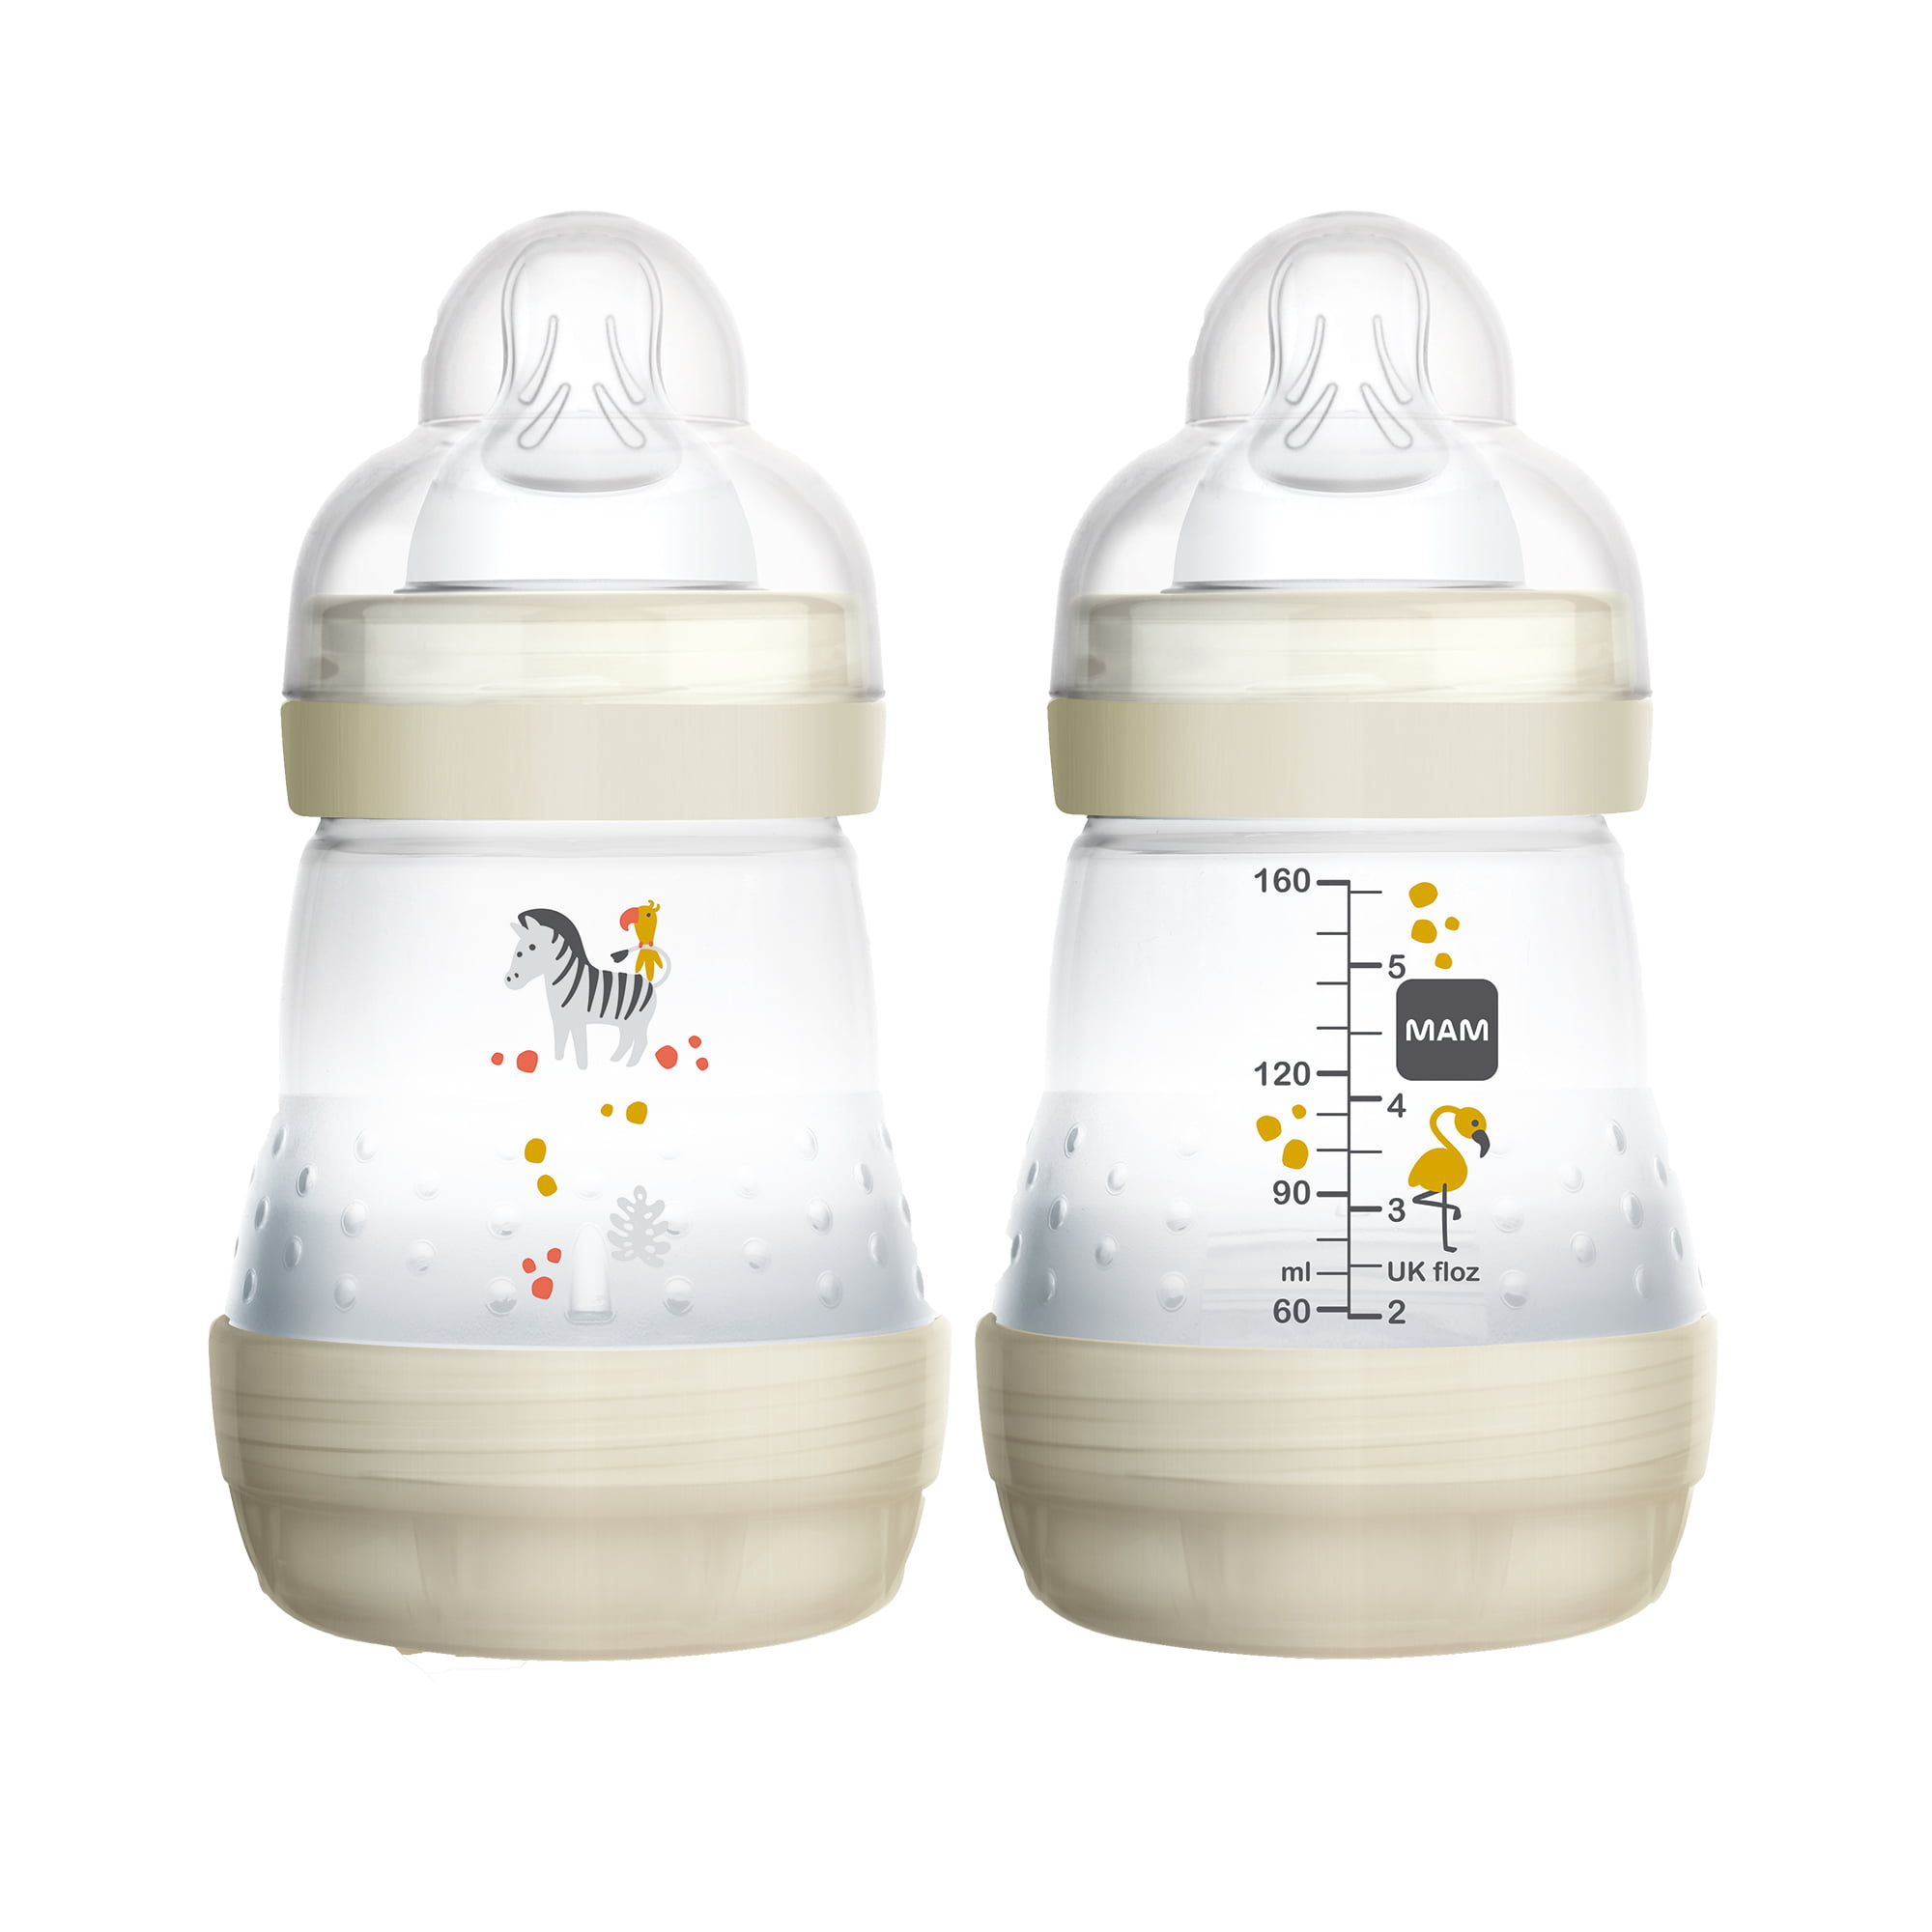 newborn baby bottles walmart